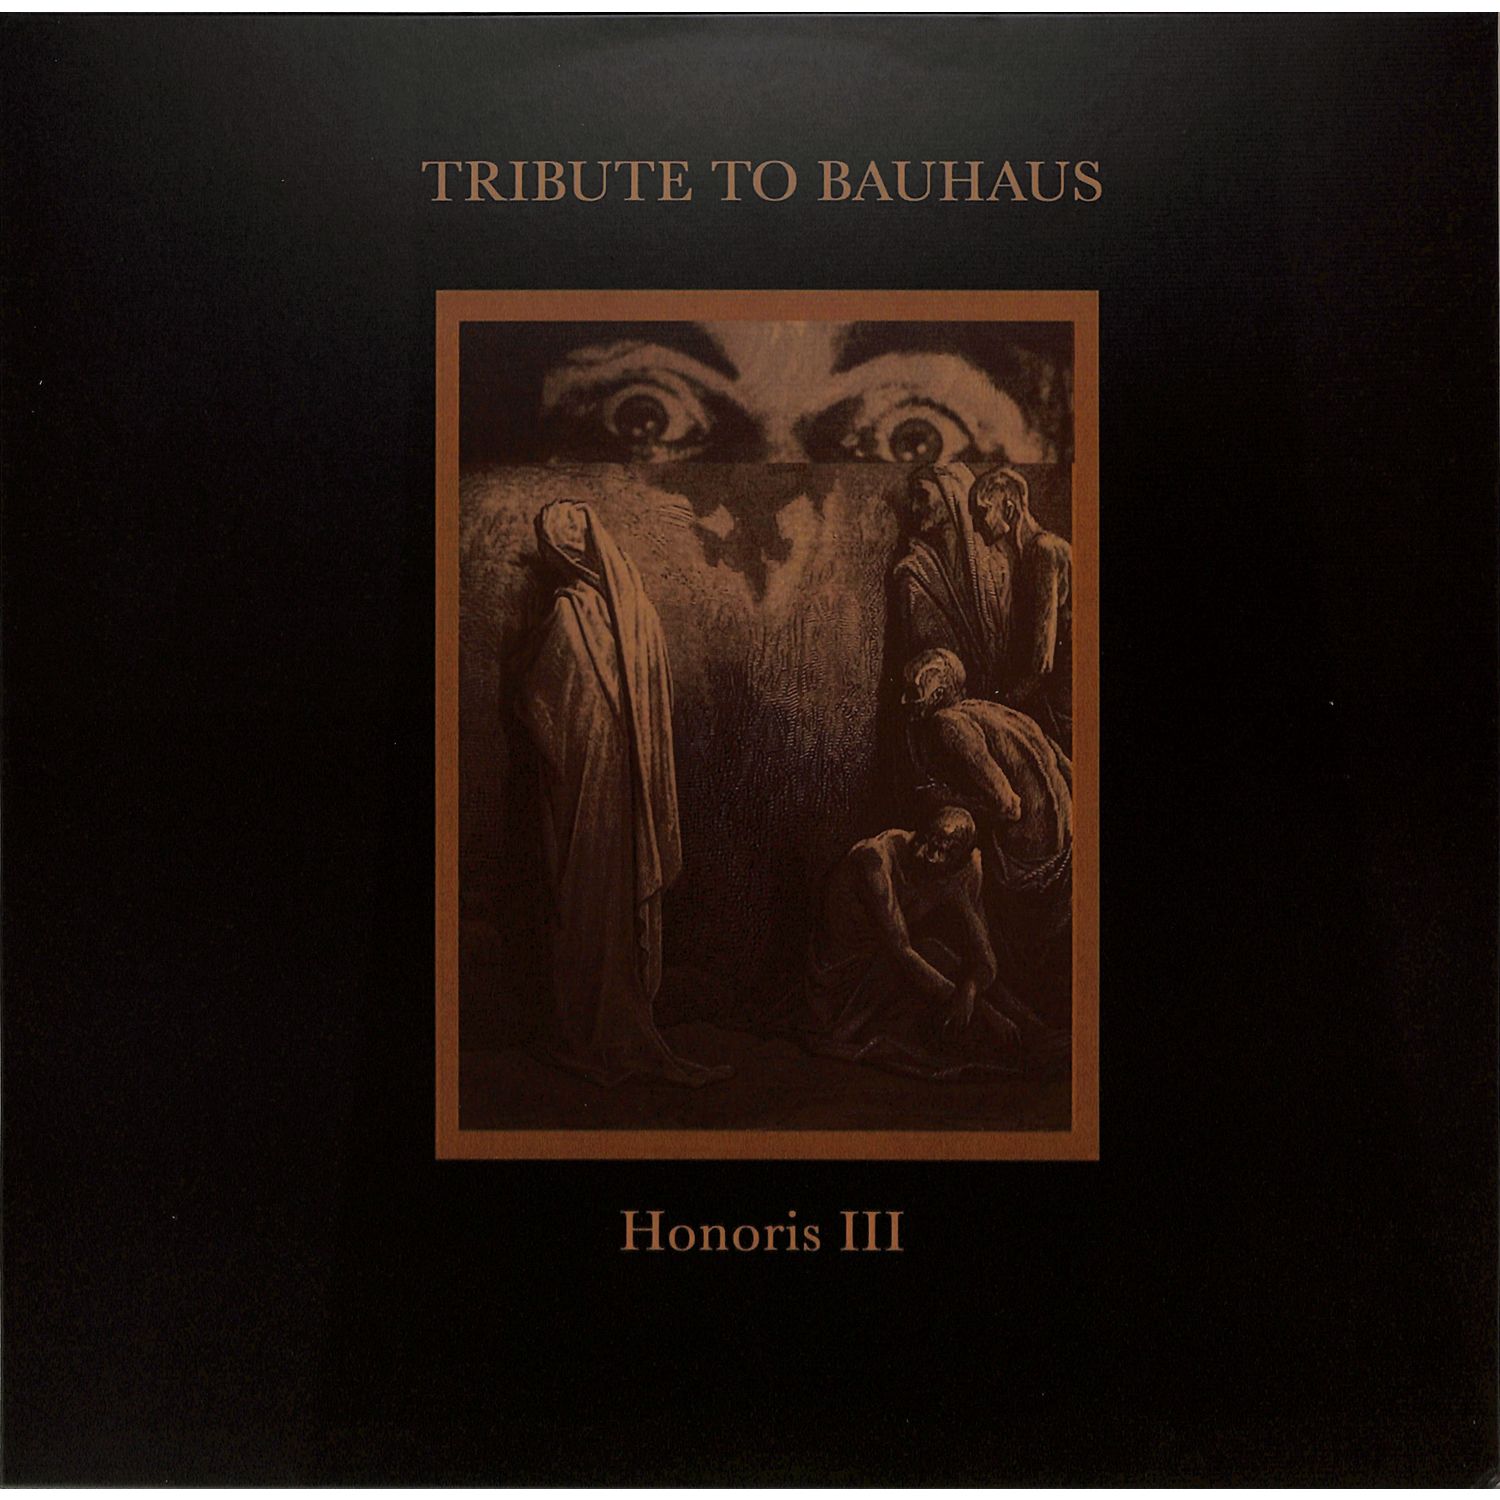 Various Artists - HONORIS III - TRIBUTE TO BAUHAUS EP 